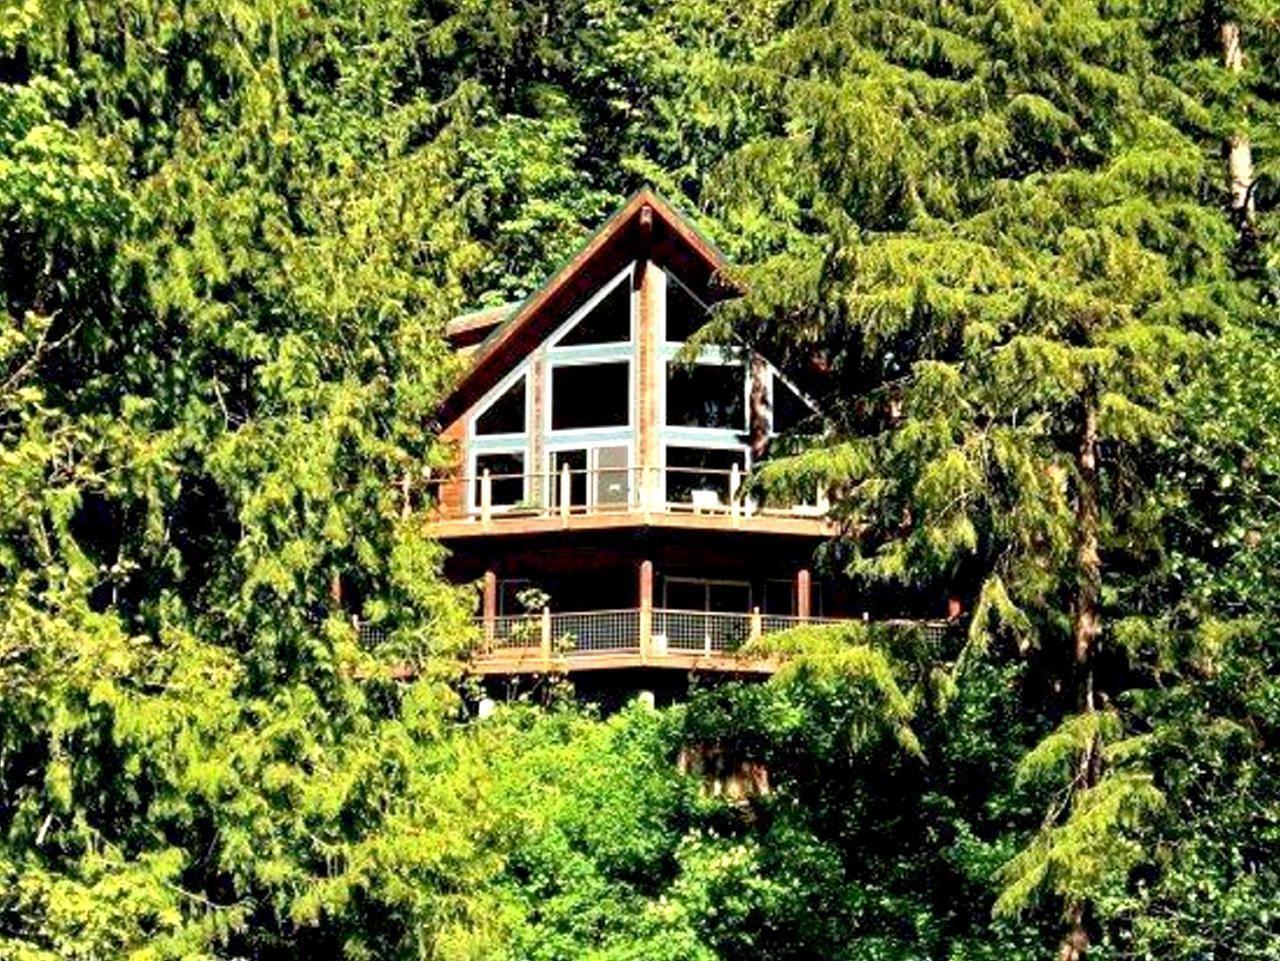 Ferienhaus in Maple Falls mit Grill und Terrasse  in Nordamerika